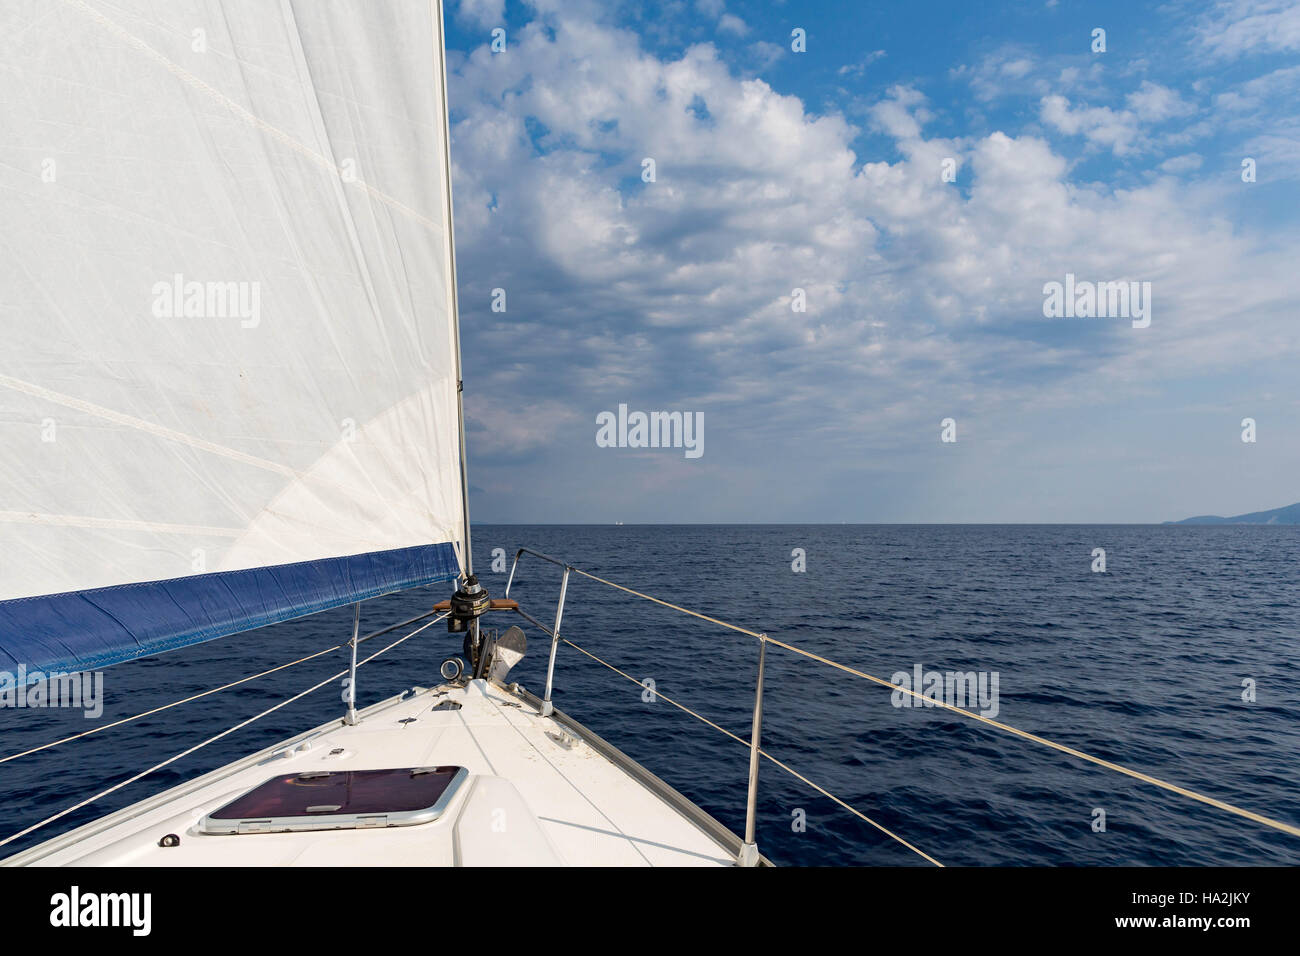 Bow of a sailing boat at sea, Ionian Sea Stock Photo